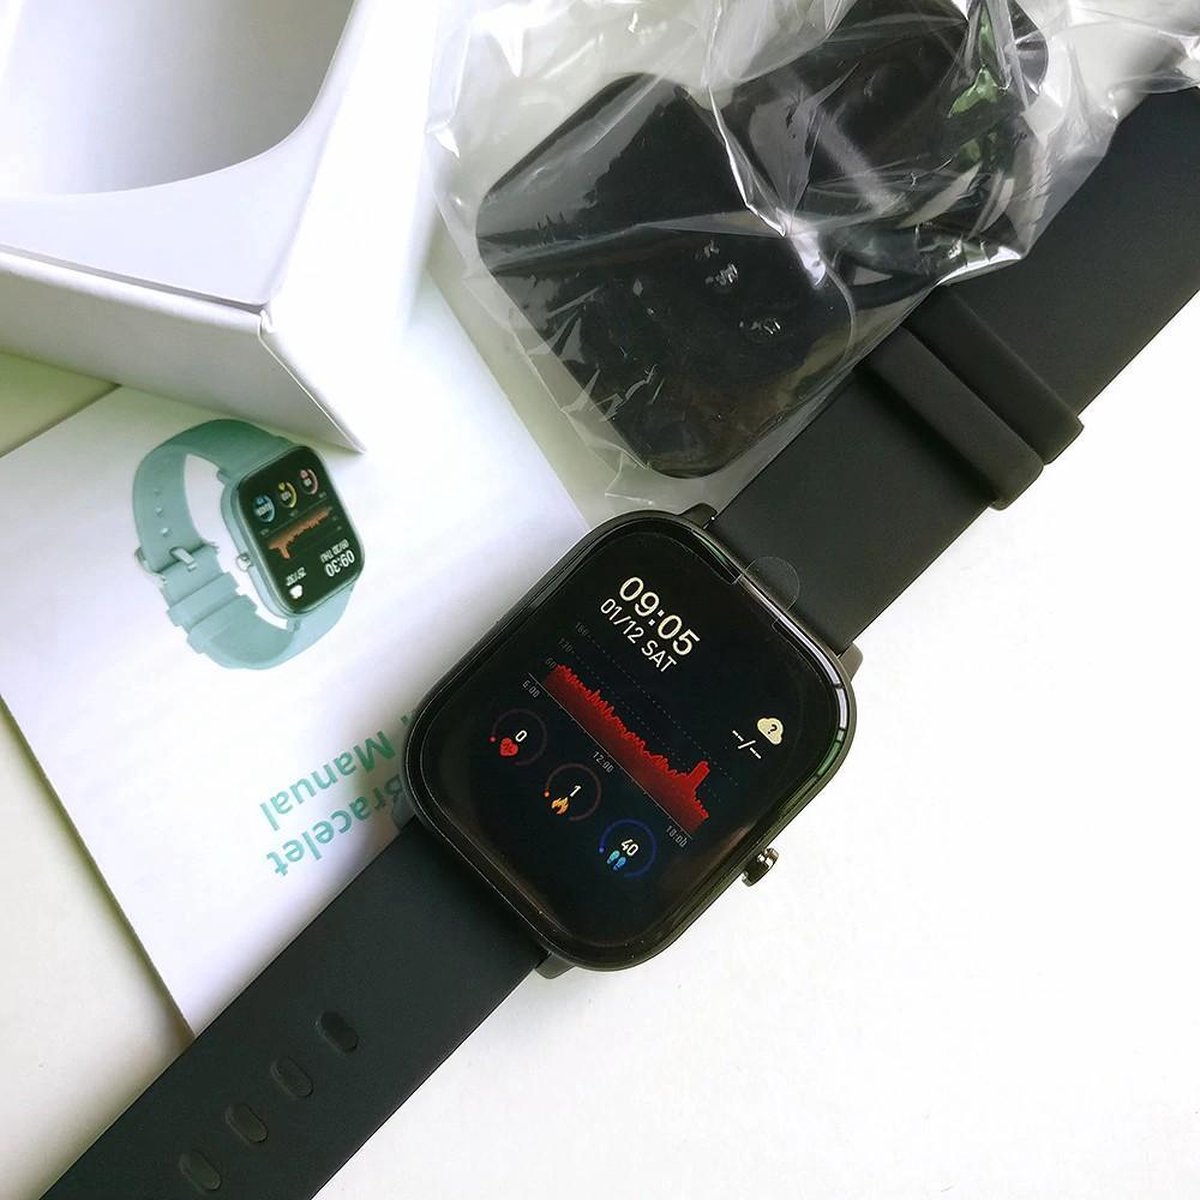 Inheems Denk vooruit verkorten Colmi P8 smartwatch - Stappenteller - Hartslagmeter - Sporthorloge | bol.com